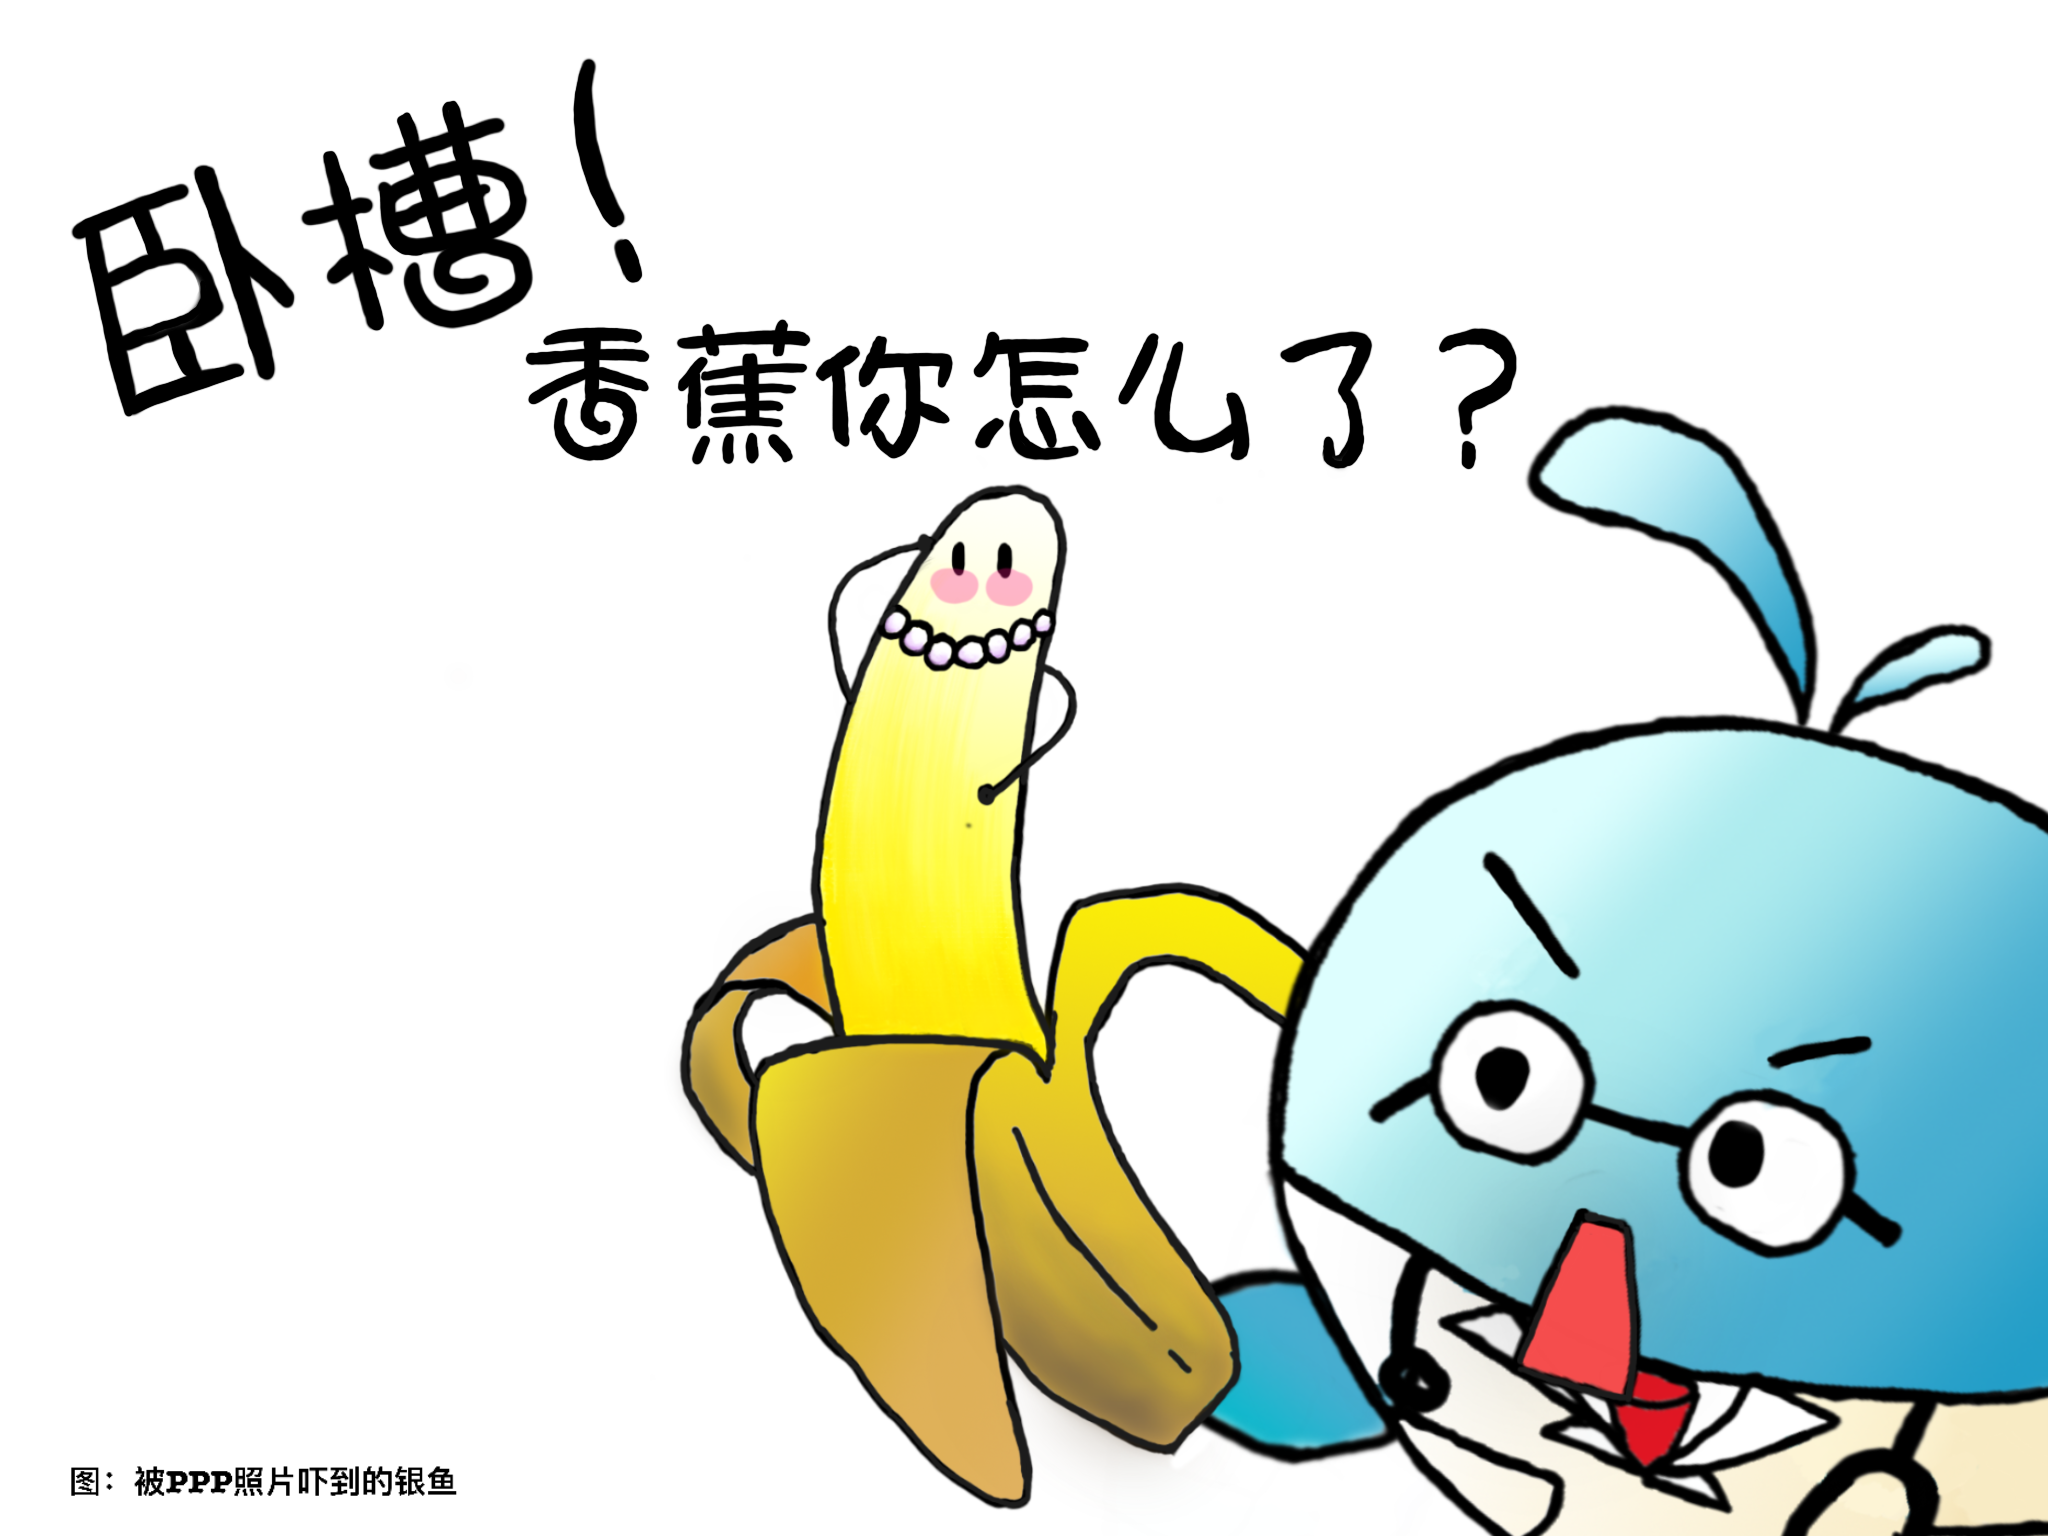 卧槽！香蕉你怎麼了？